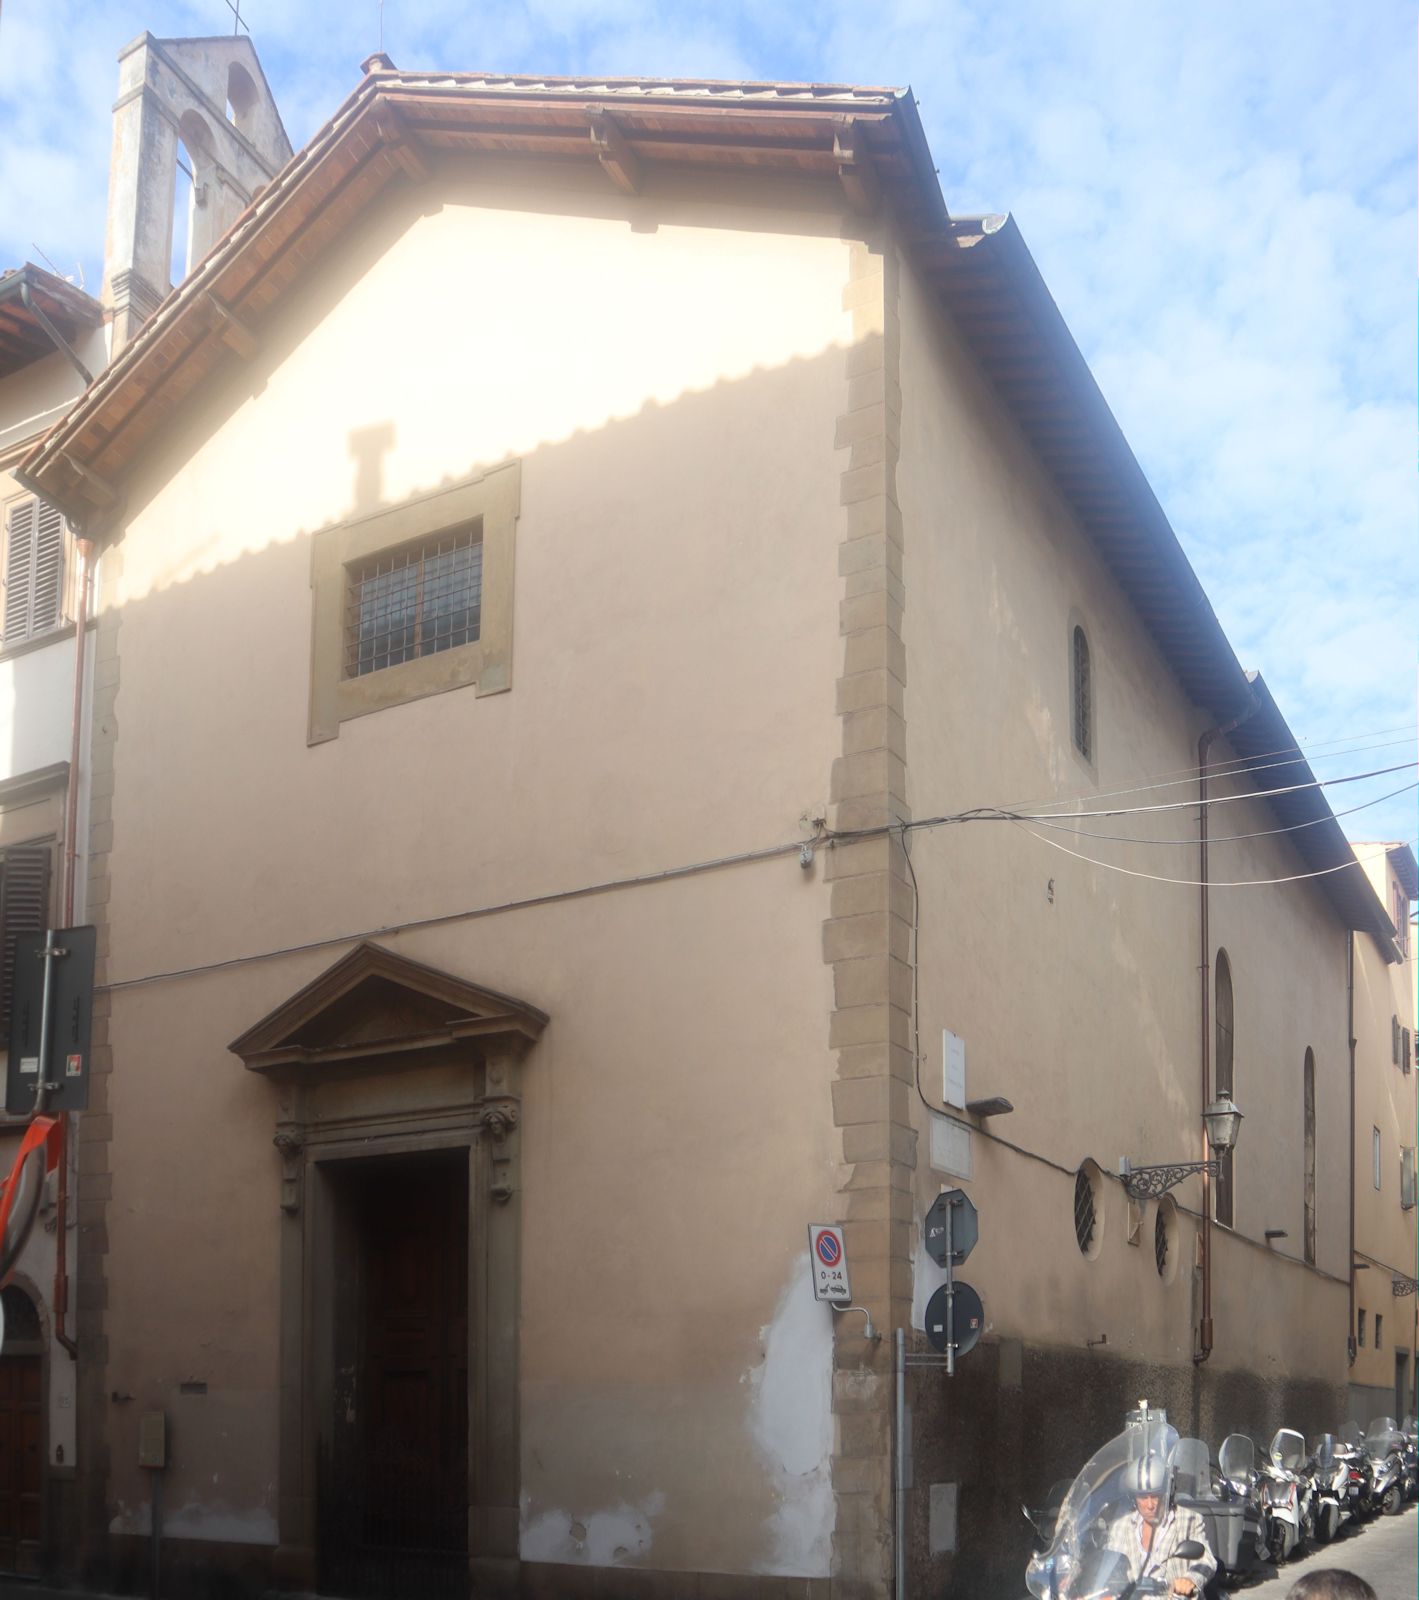 ehemaliges Kloster Sant'Elisabetta delle Convertite in Florenz an der Stelle von Philipps Geburtshaus